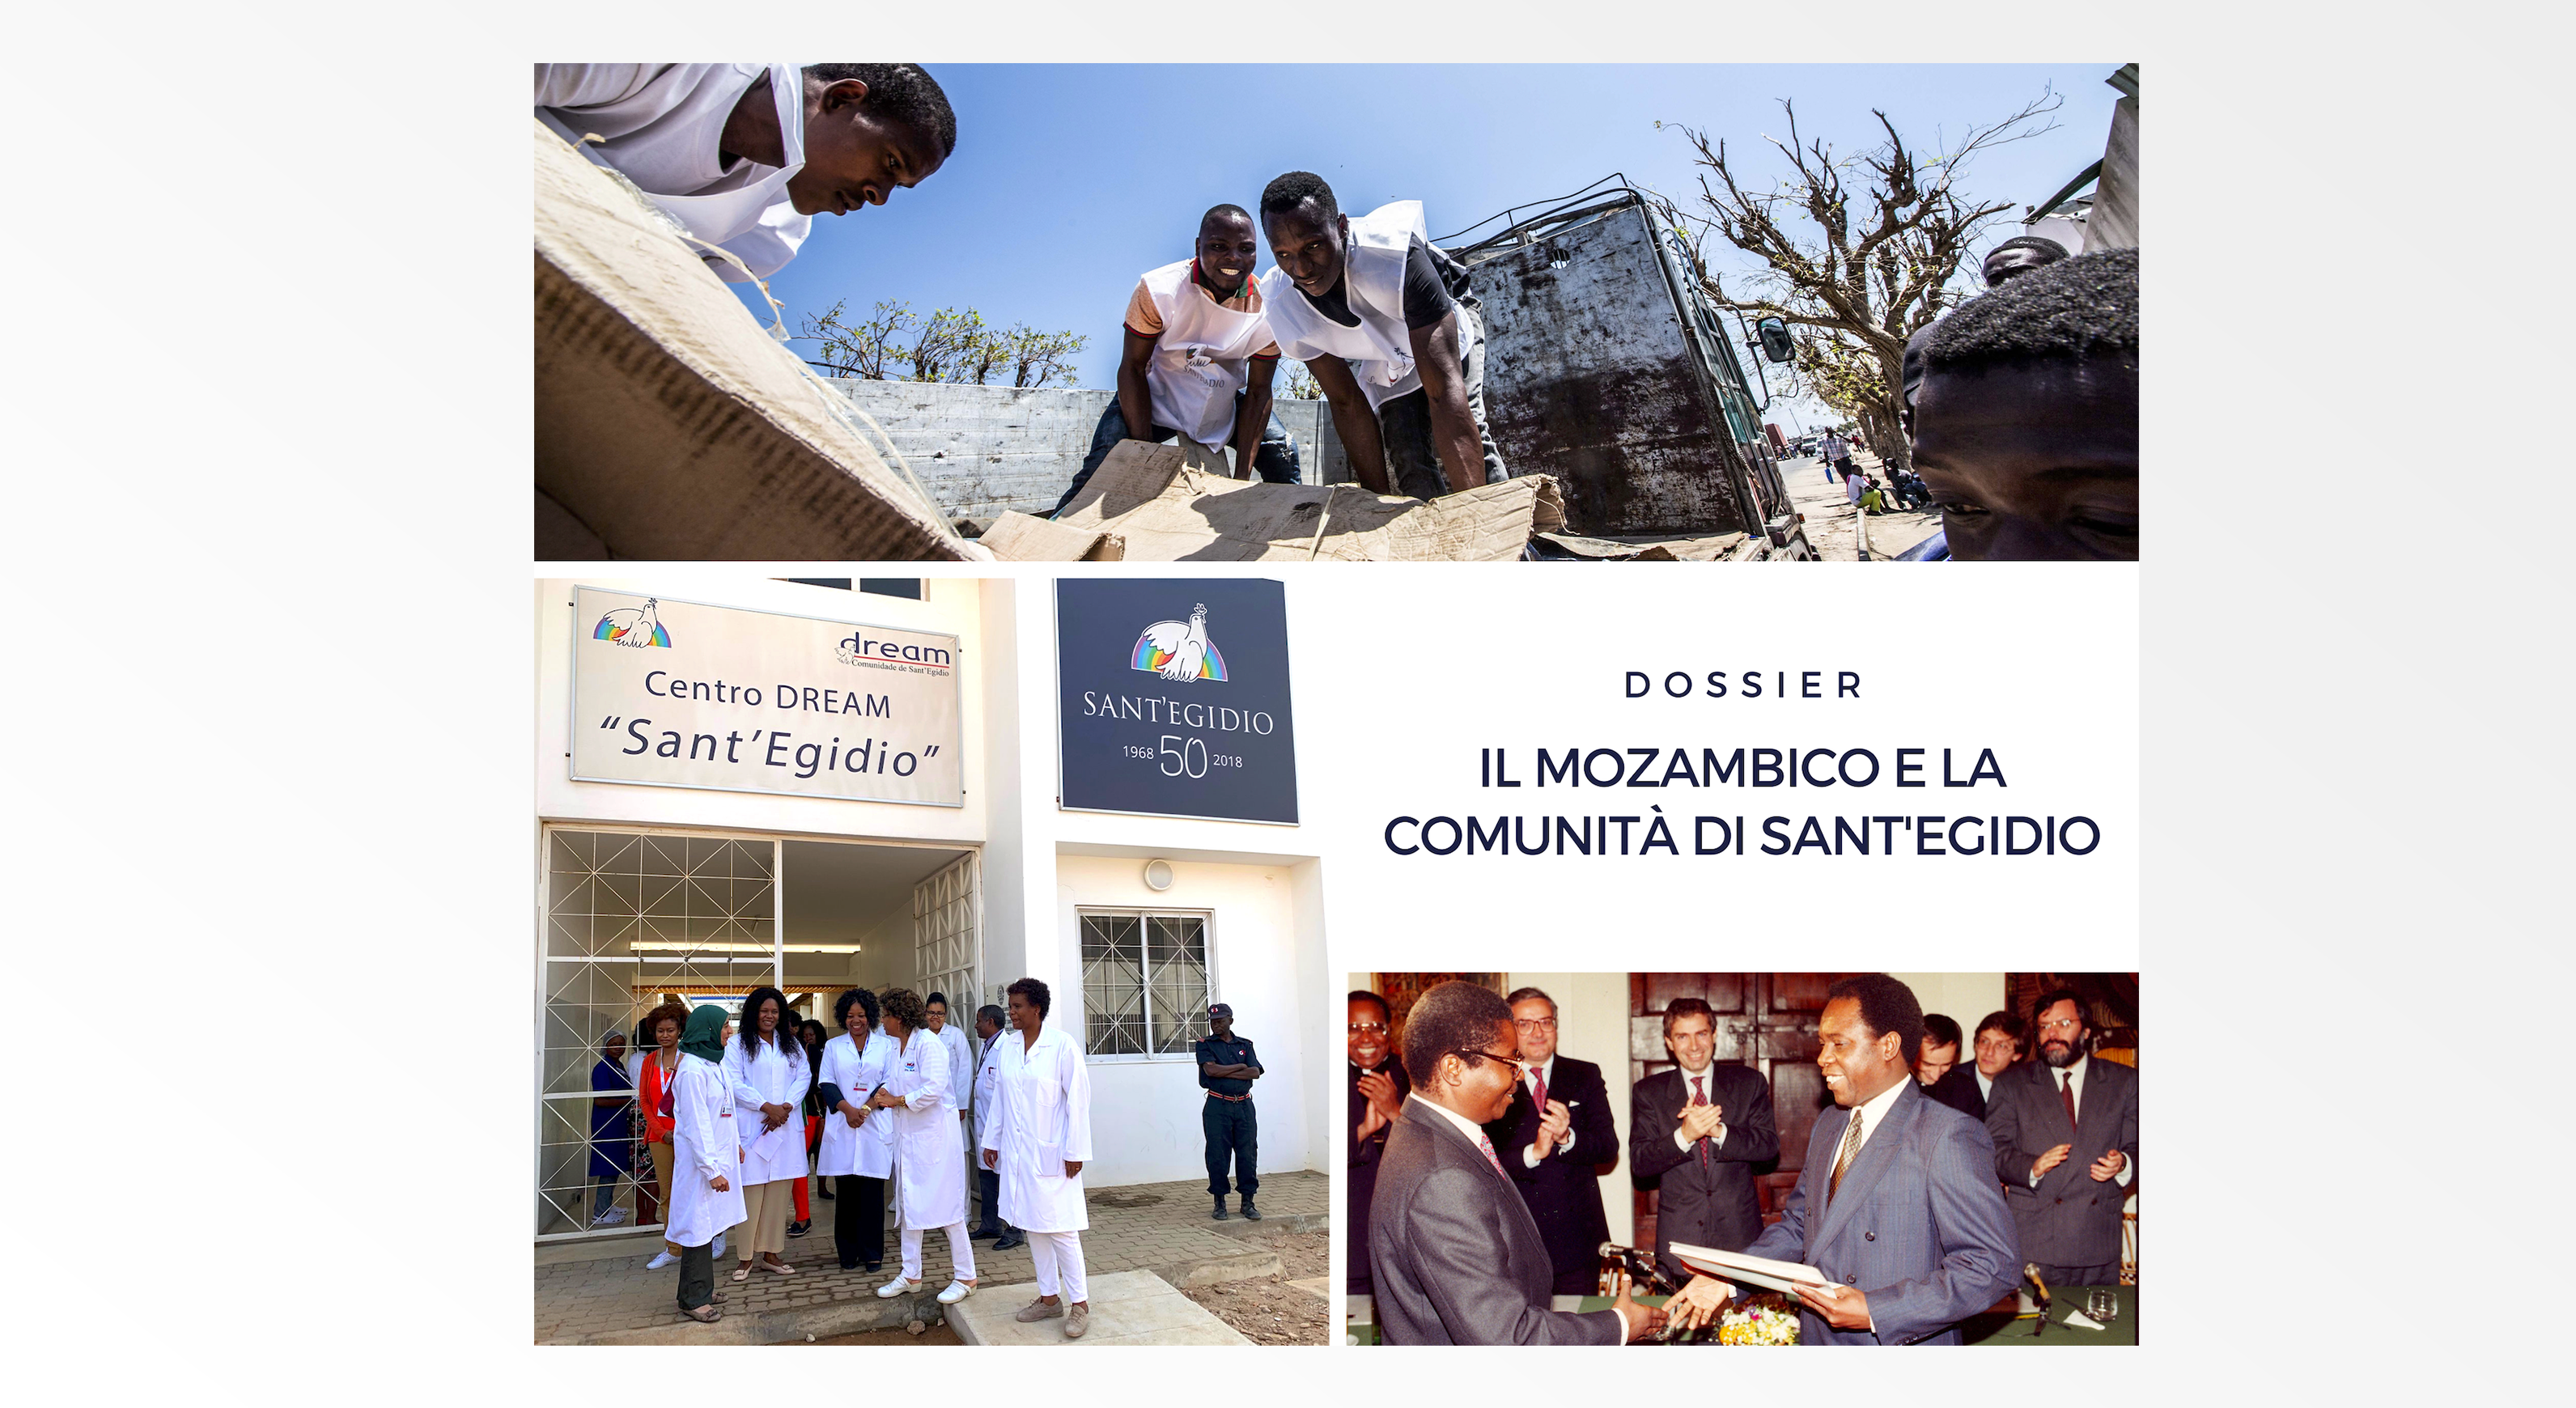 Dossier: Il Mozambico e la Comunità di Sant'Egidio